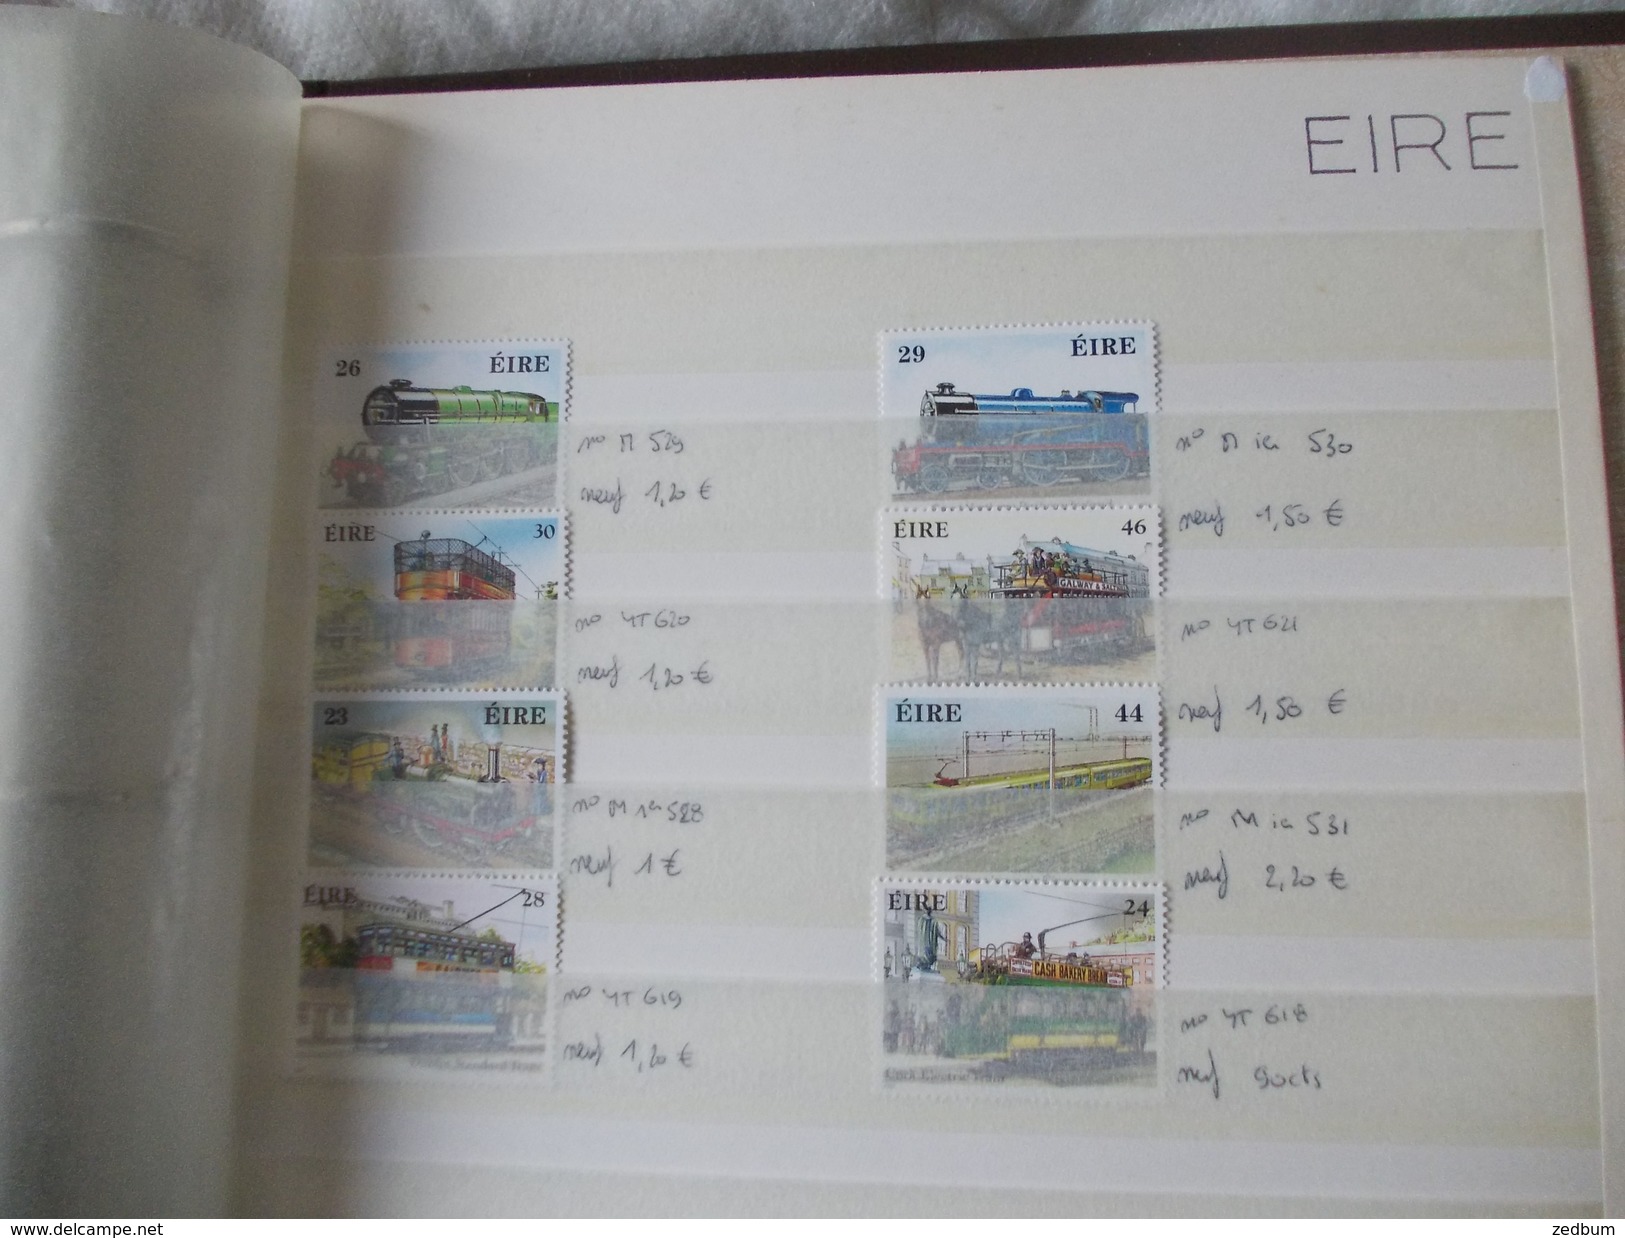 ALBUM 3 collection de timbres avec pour thème le chemin de fer train de tout pays valeur 394.10 &euro;